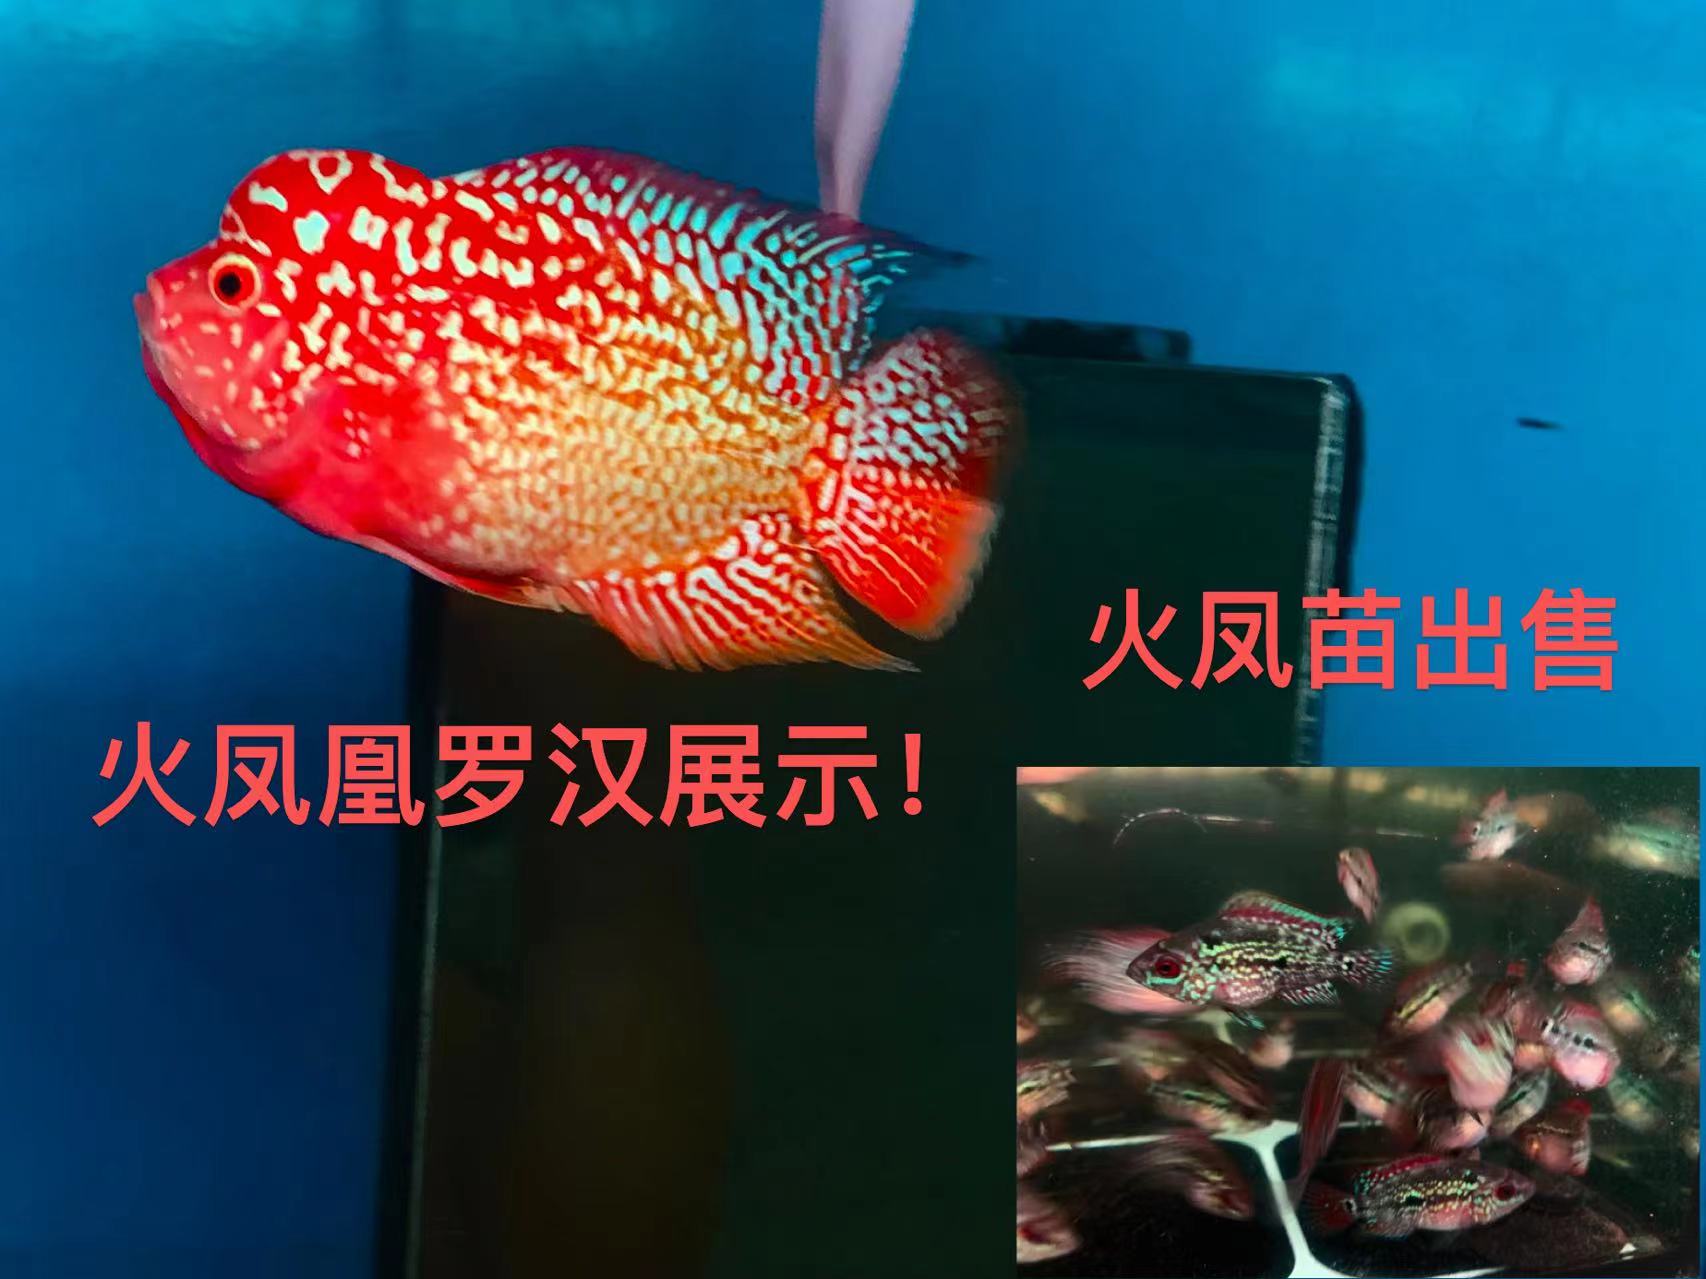 观赏鱼热带大型观赏鱼火凤凰罗汉鱼古典幻彩寿星鱼大头鱼彩色鱼